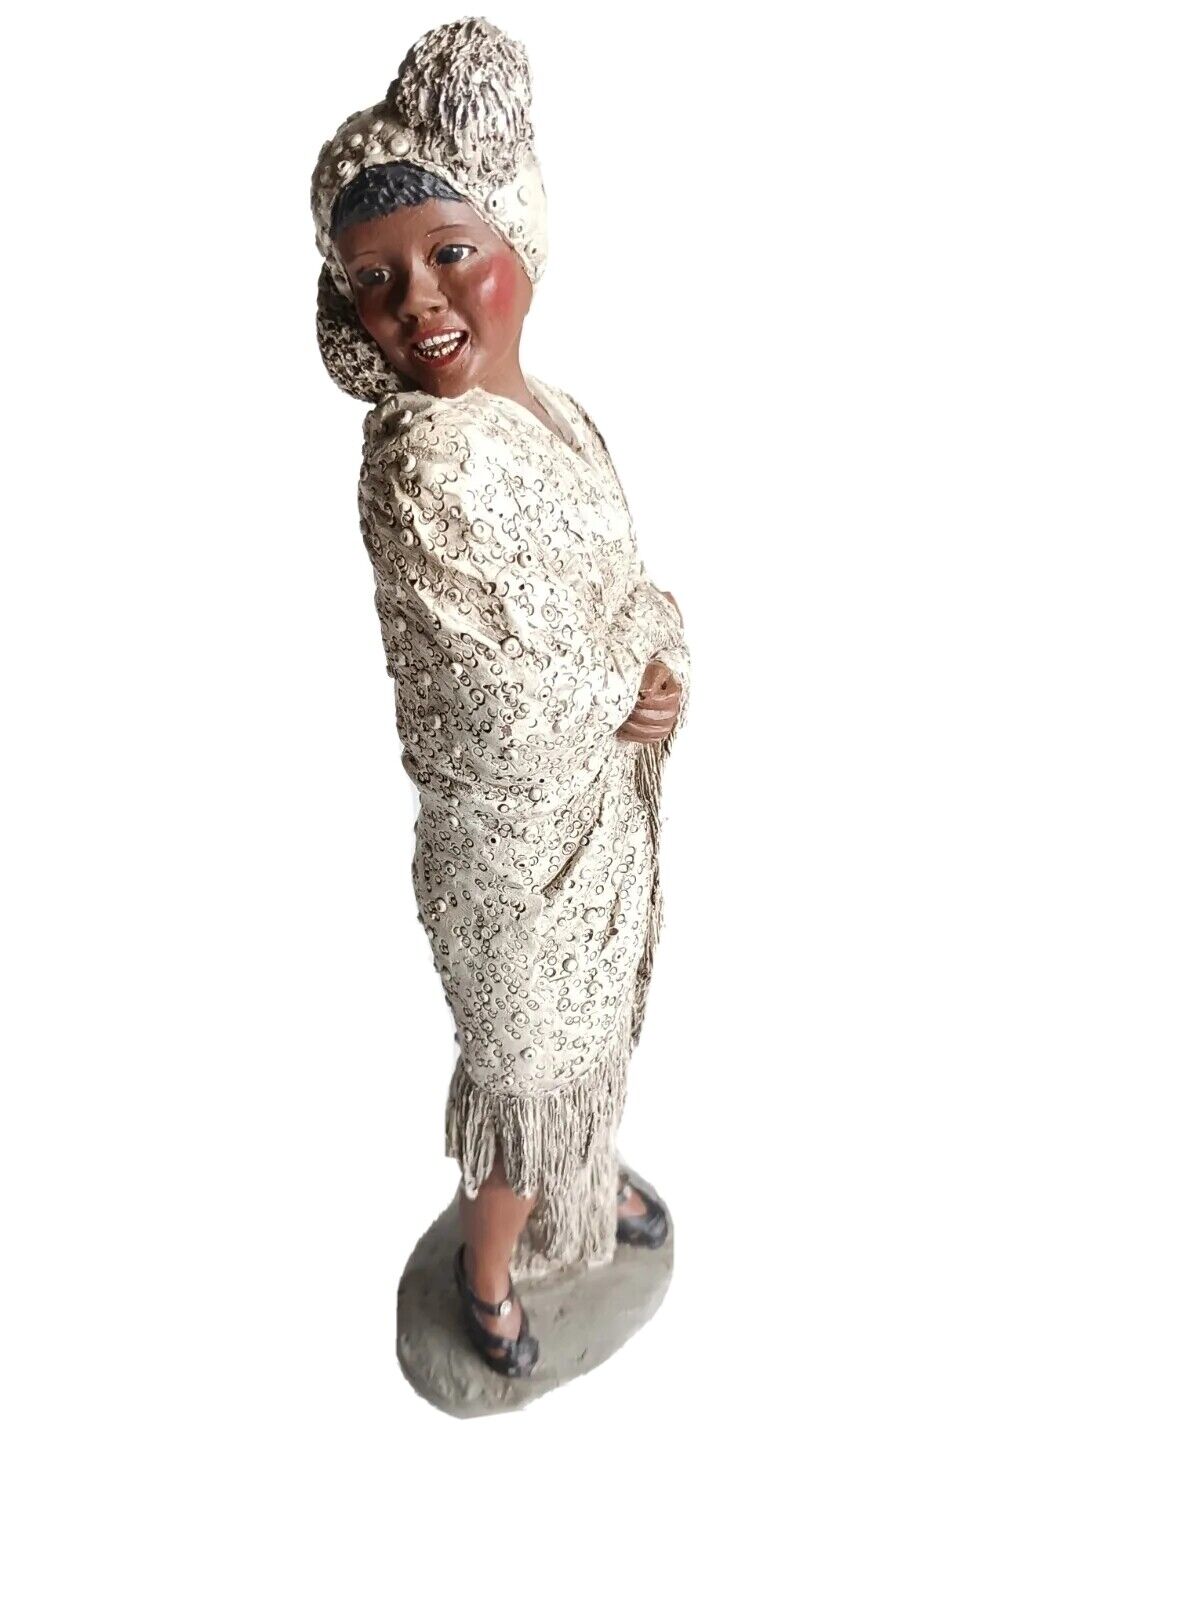 Vintage Bessie Smith Figure All God's Children